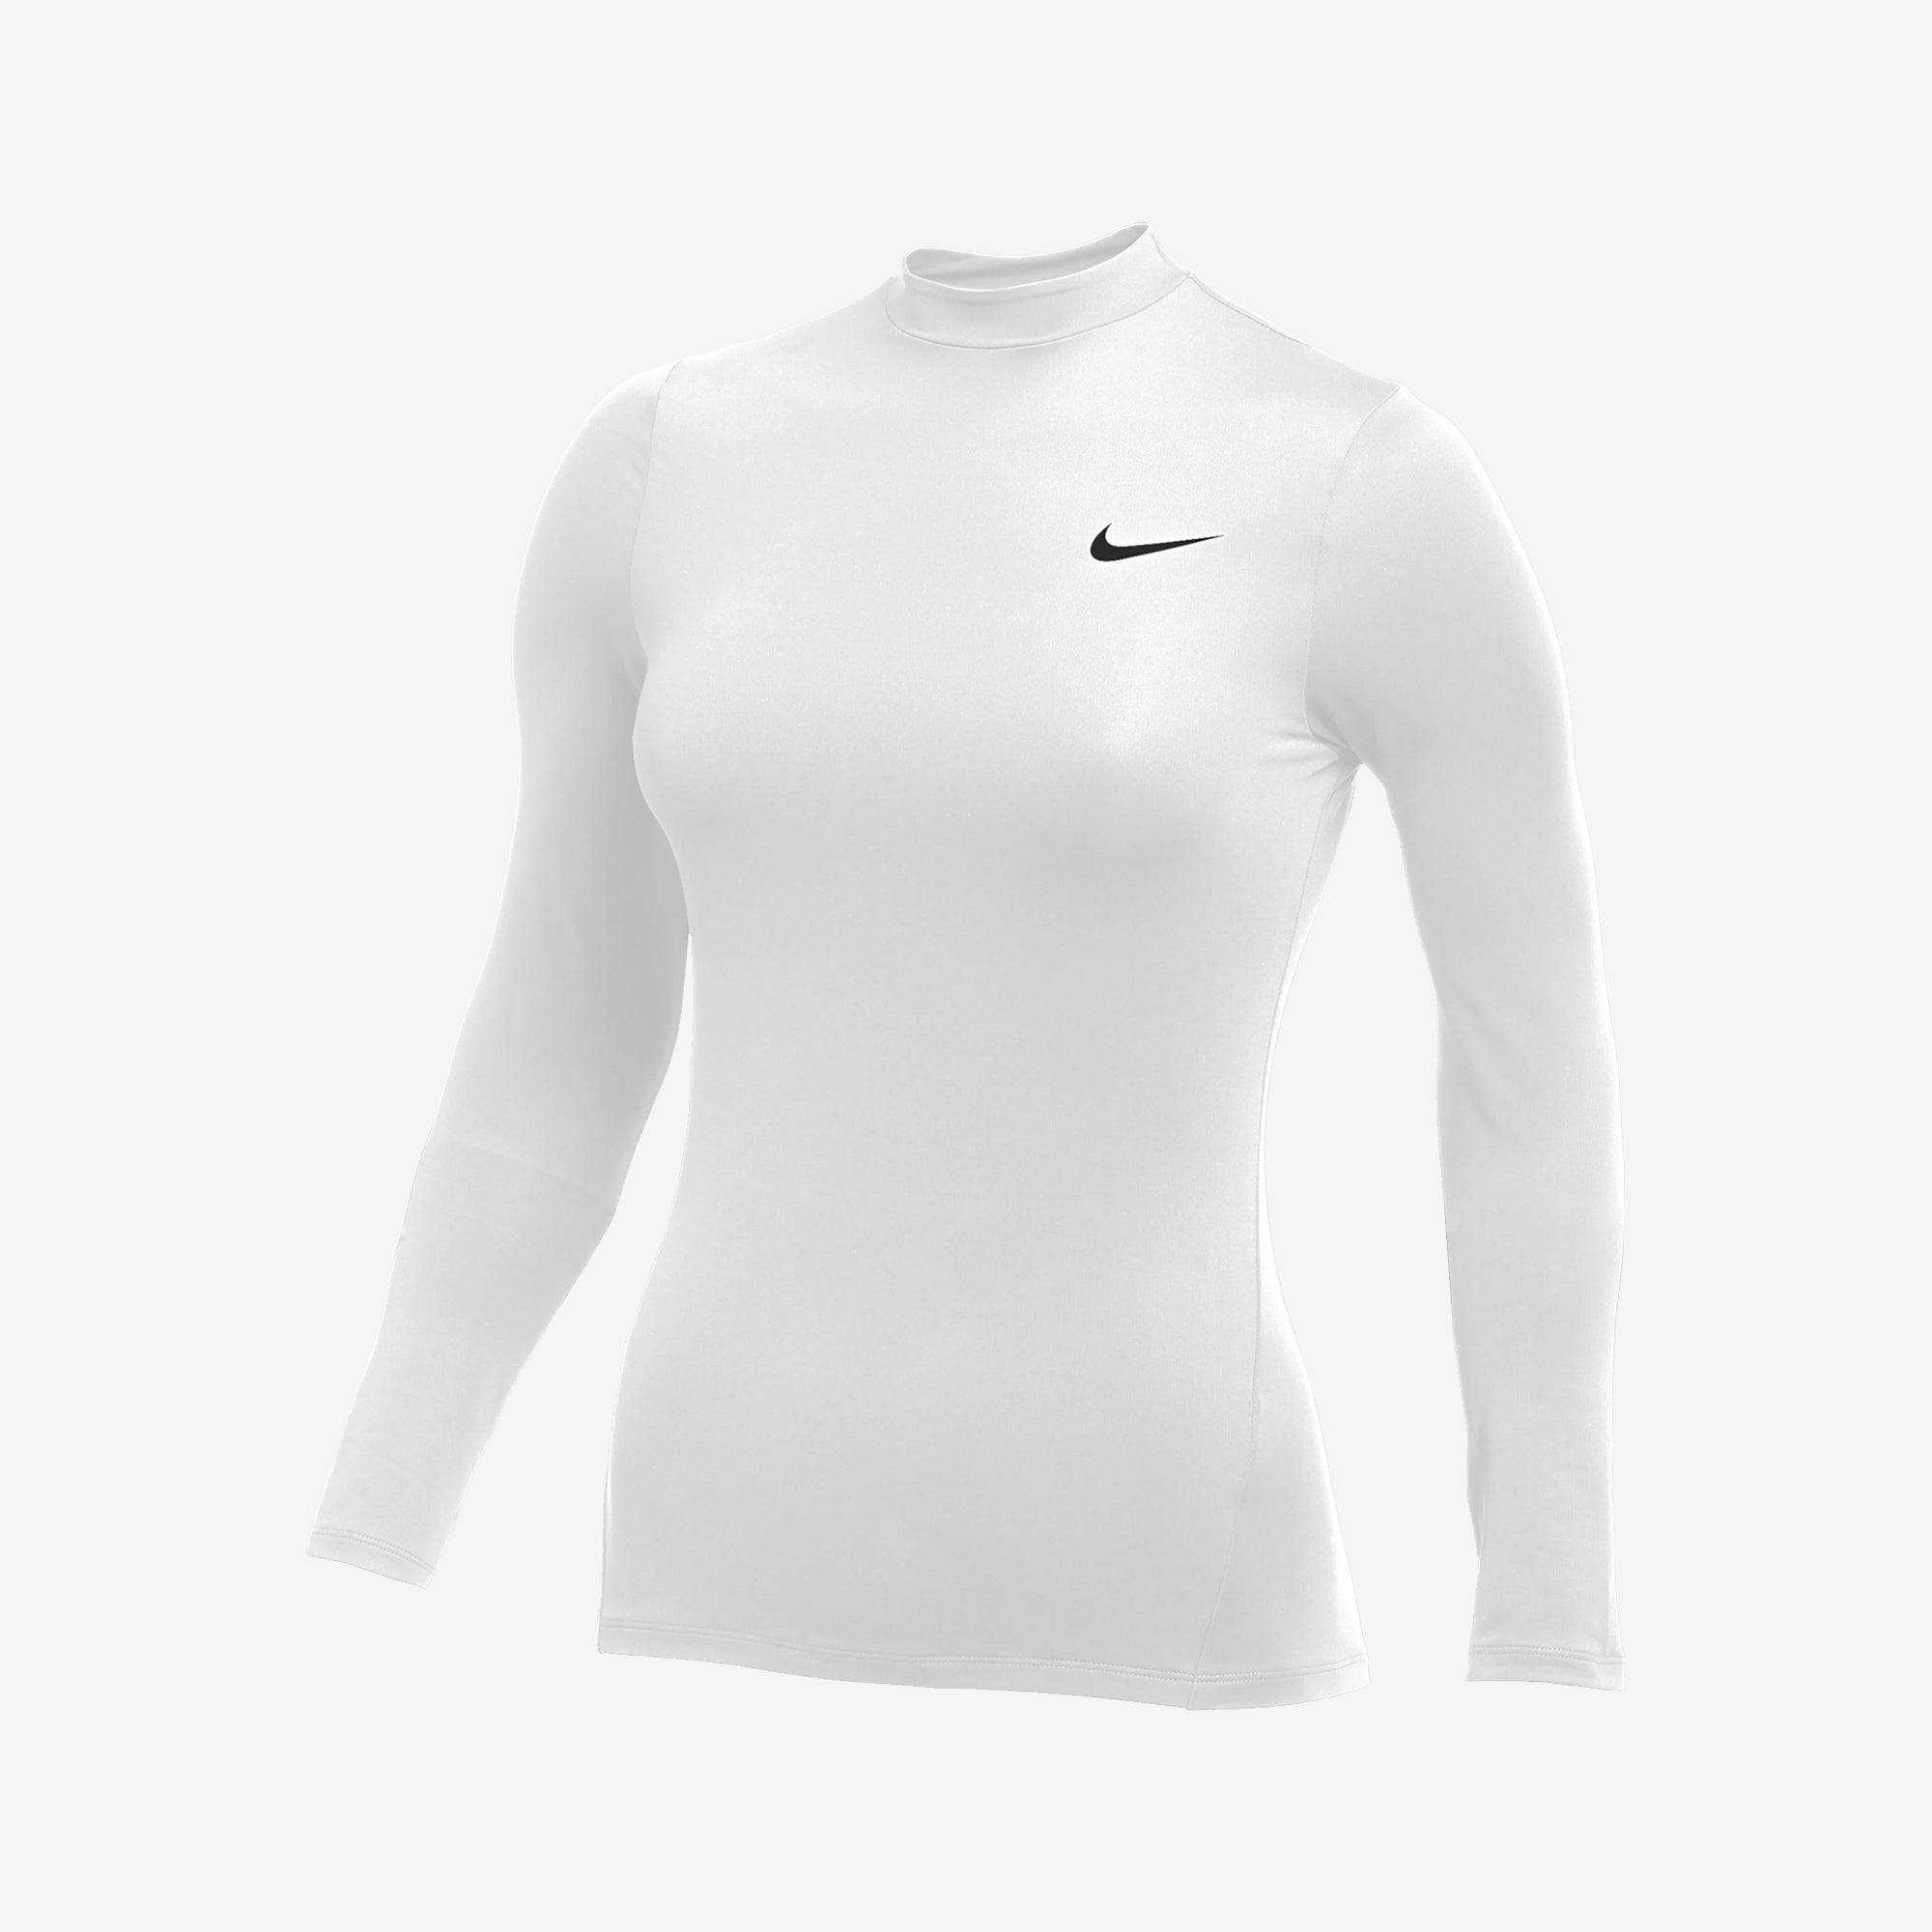 lægemidlet færdig Historiker Nike Pro Women's Long Sleeve Warm Top White